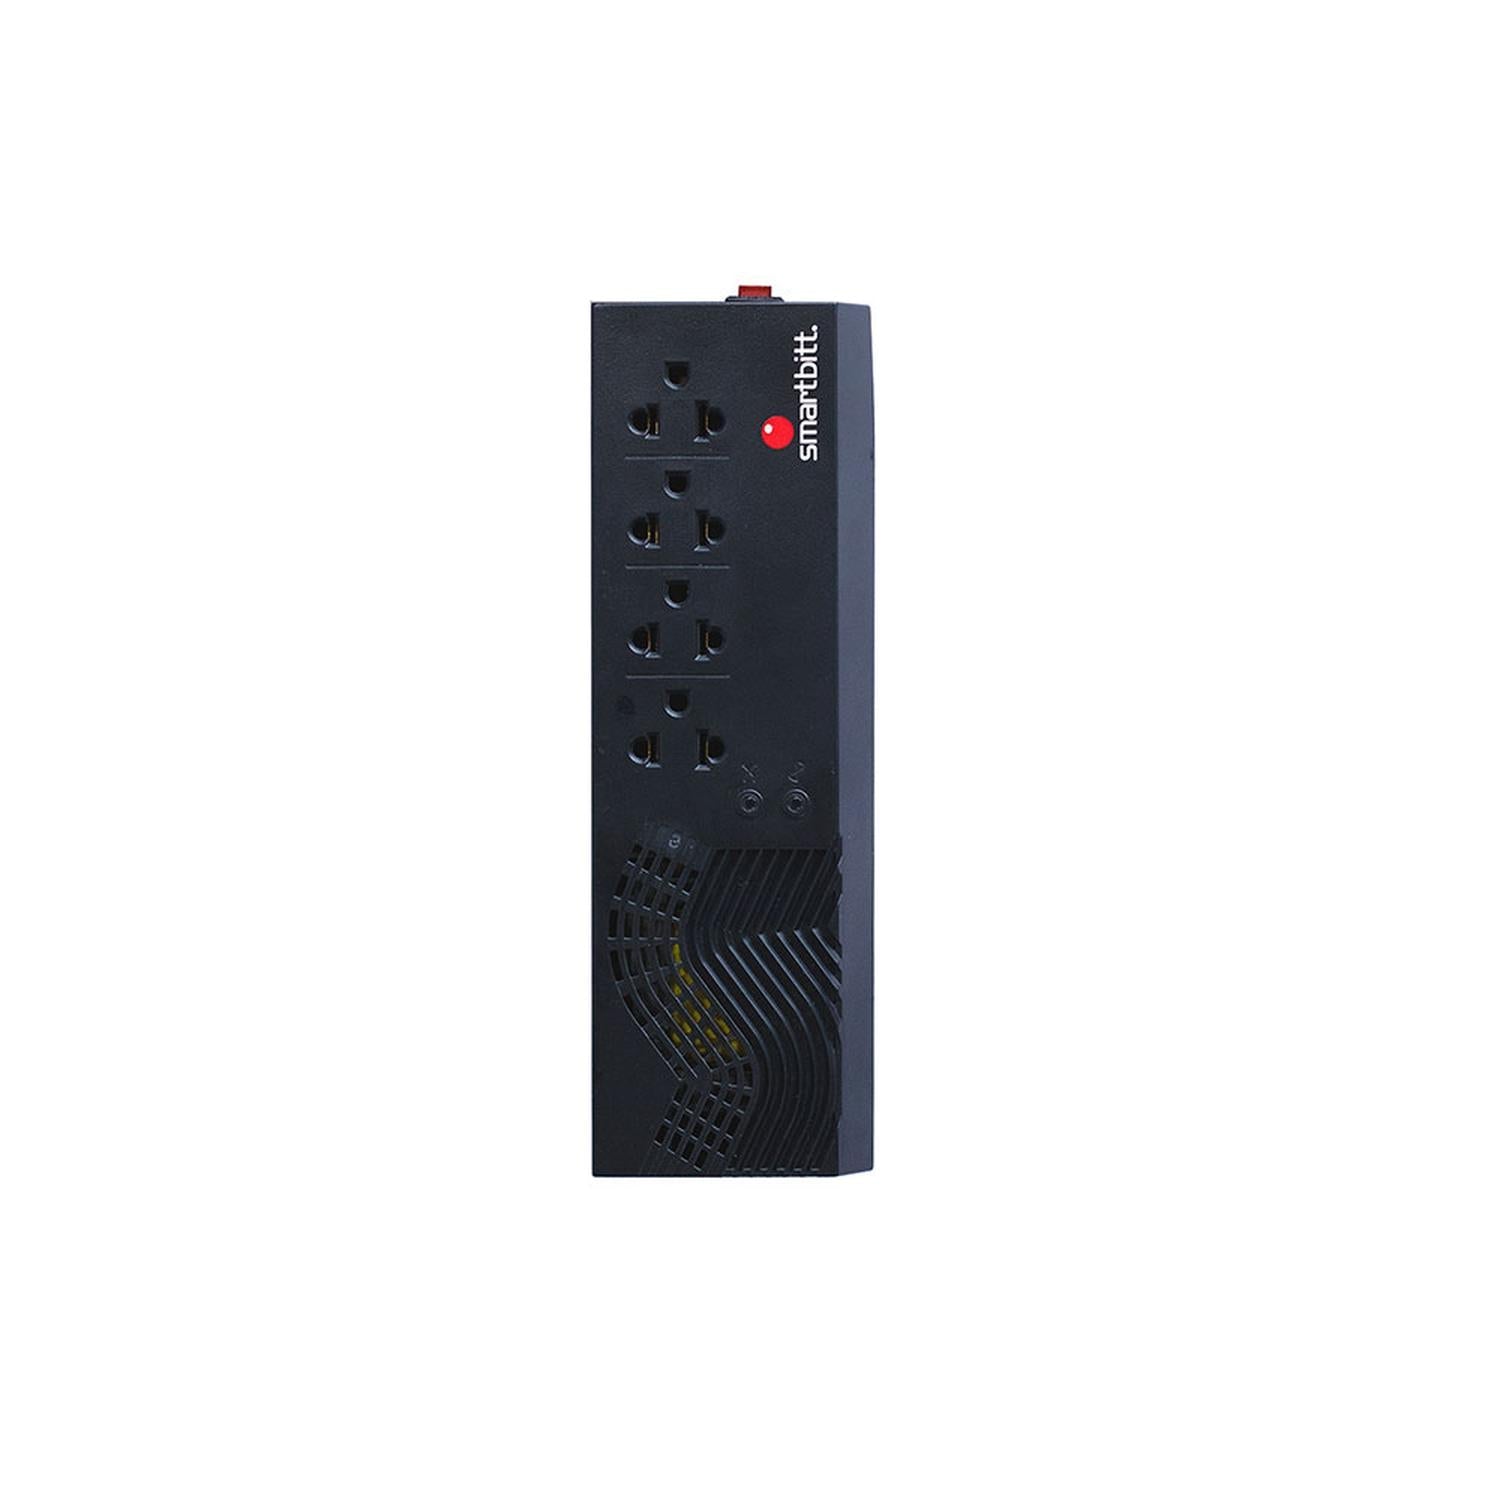 Regulador de Voltaje Smartbitt 4 Contactos 1200 VA / 600 W